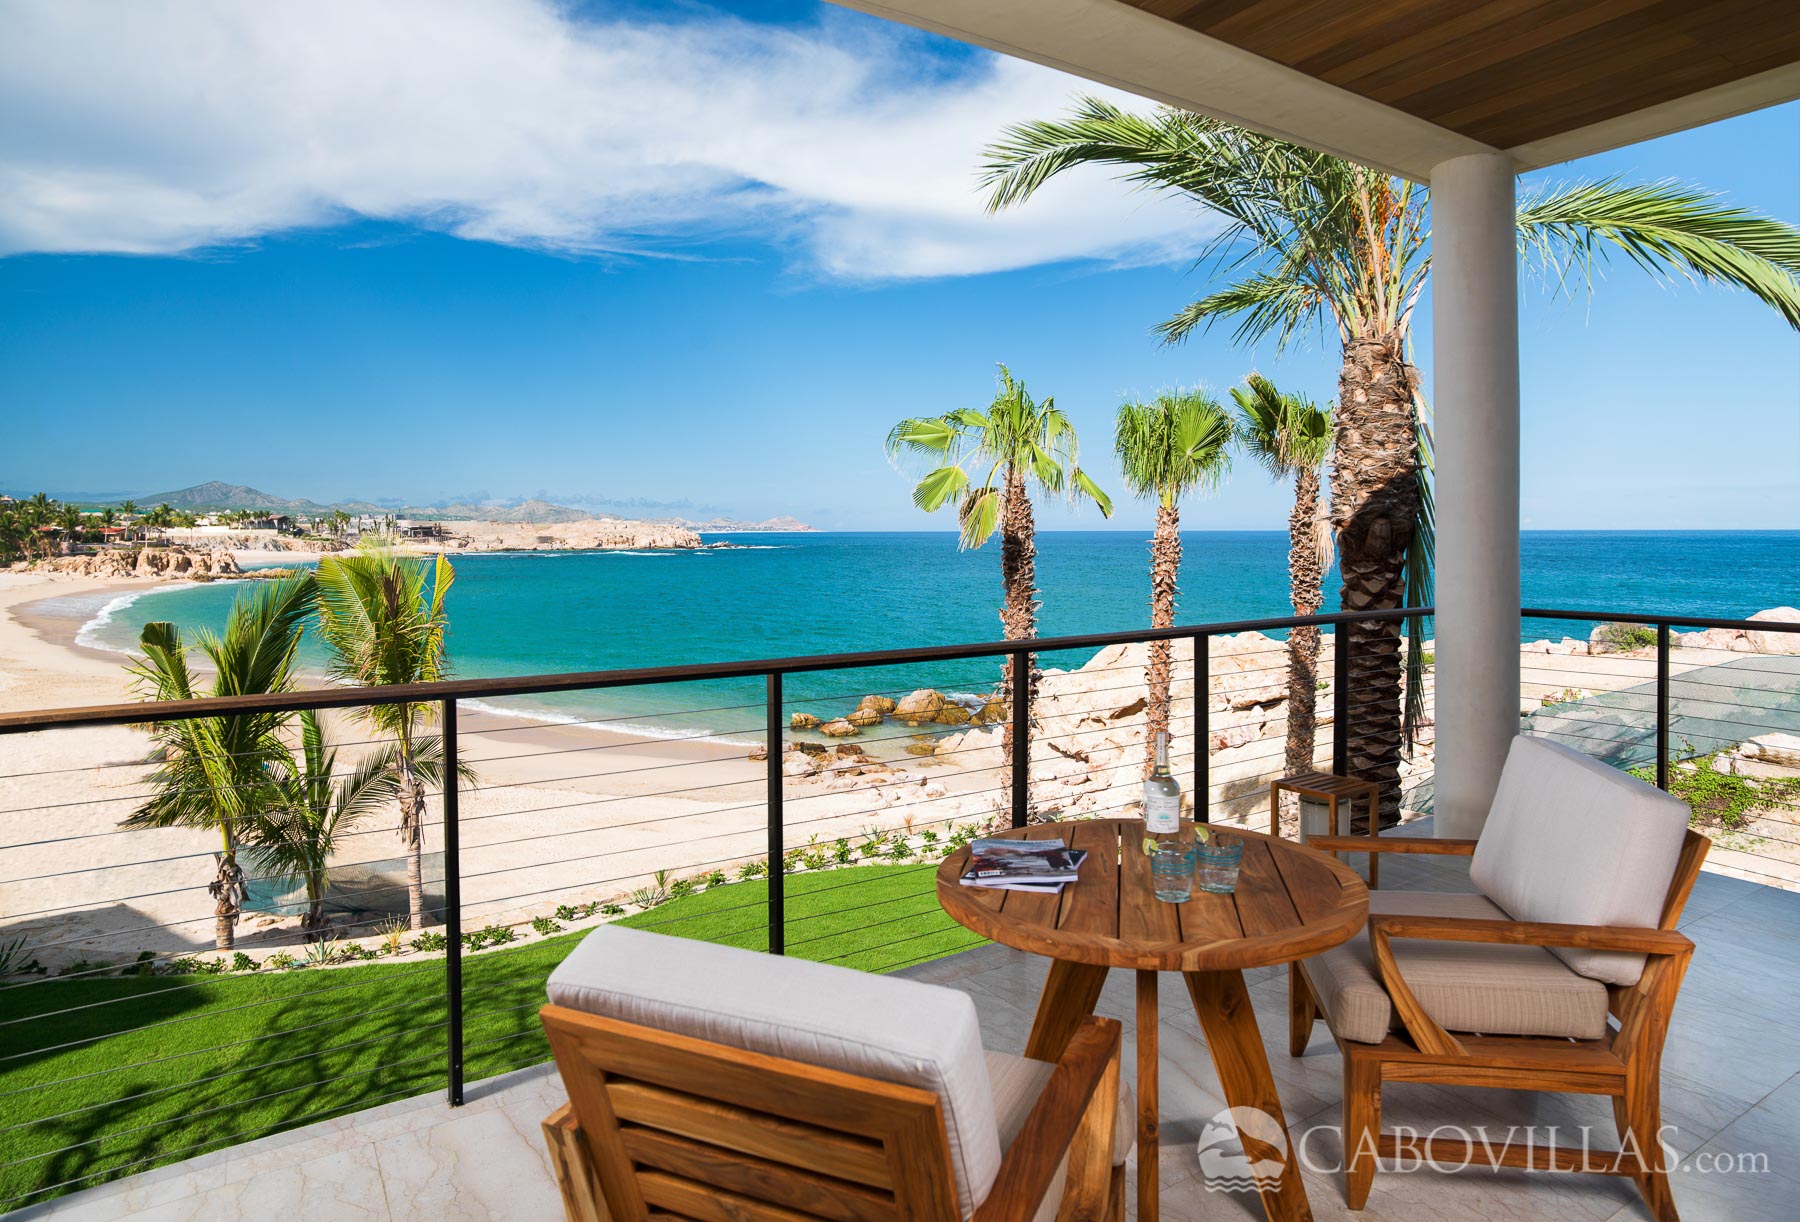 Chileno Bay Resort & Residences - Cabo San Lucas, Mexico